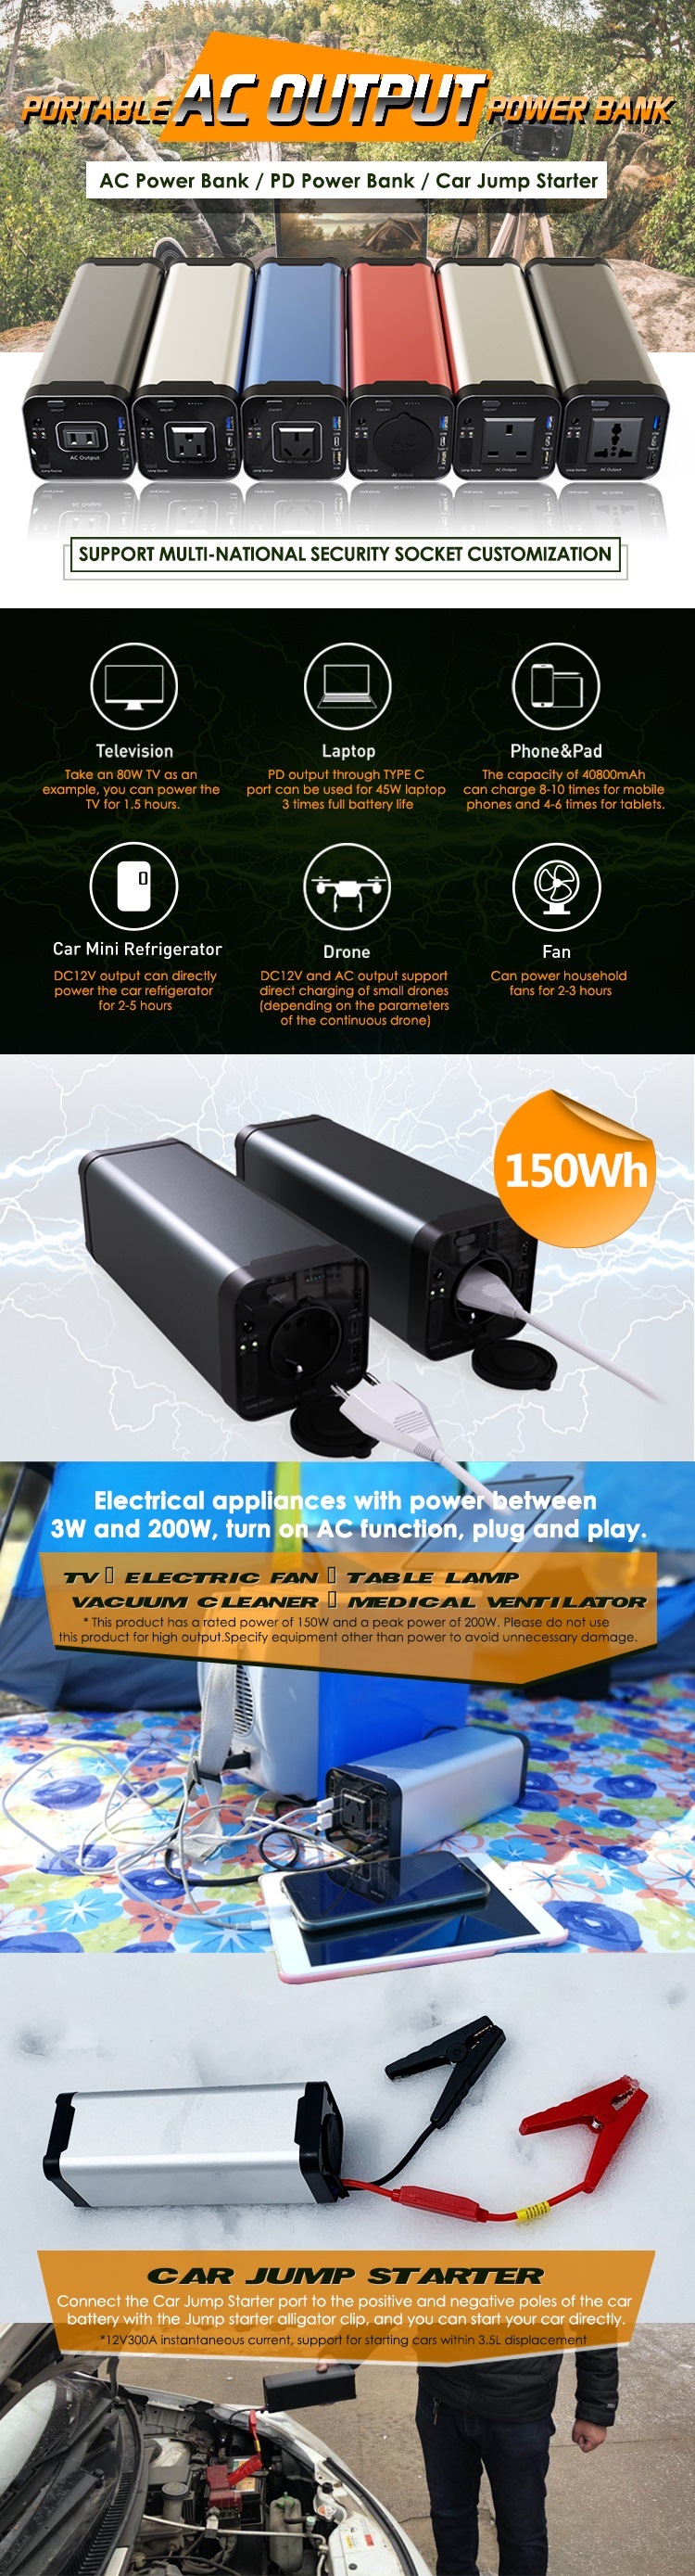 150W DC / AC portable Solar Power Bank 40000mAh avec RoHS, CE, KC MSDS Certifications